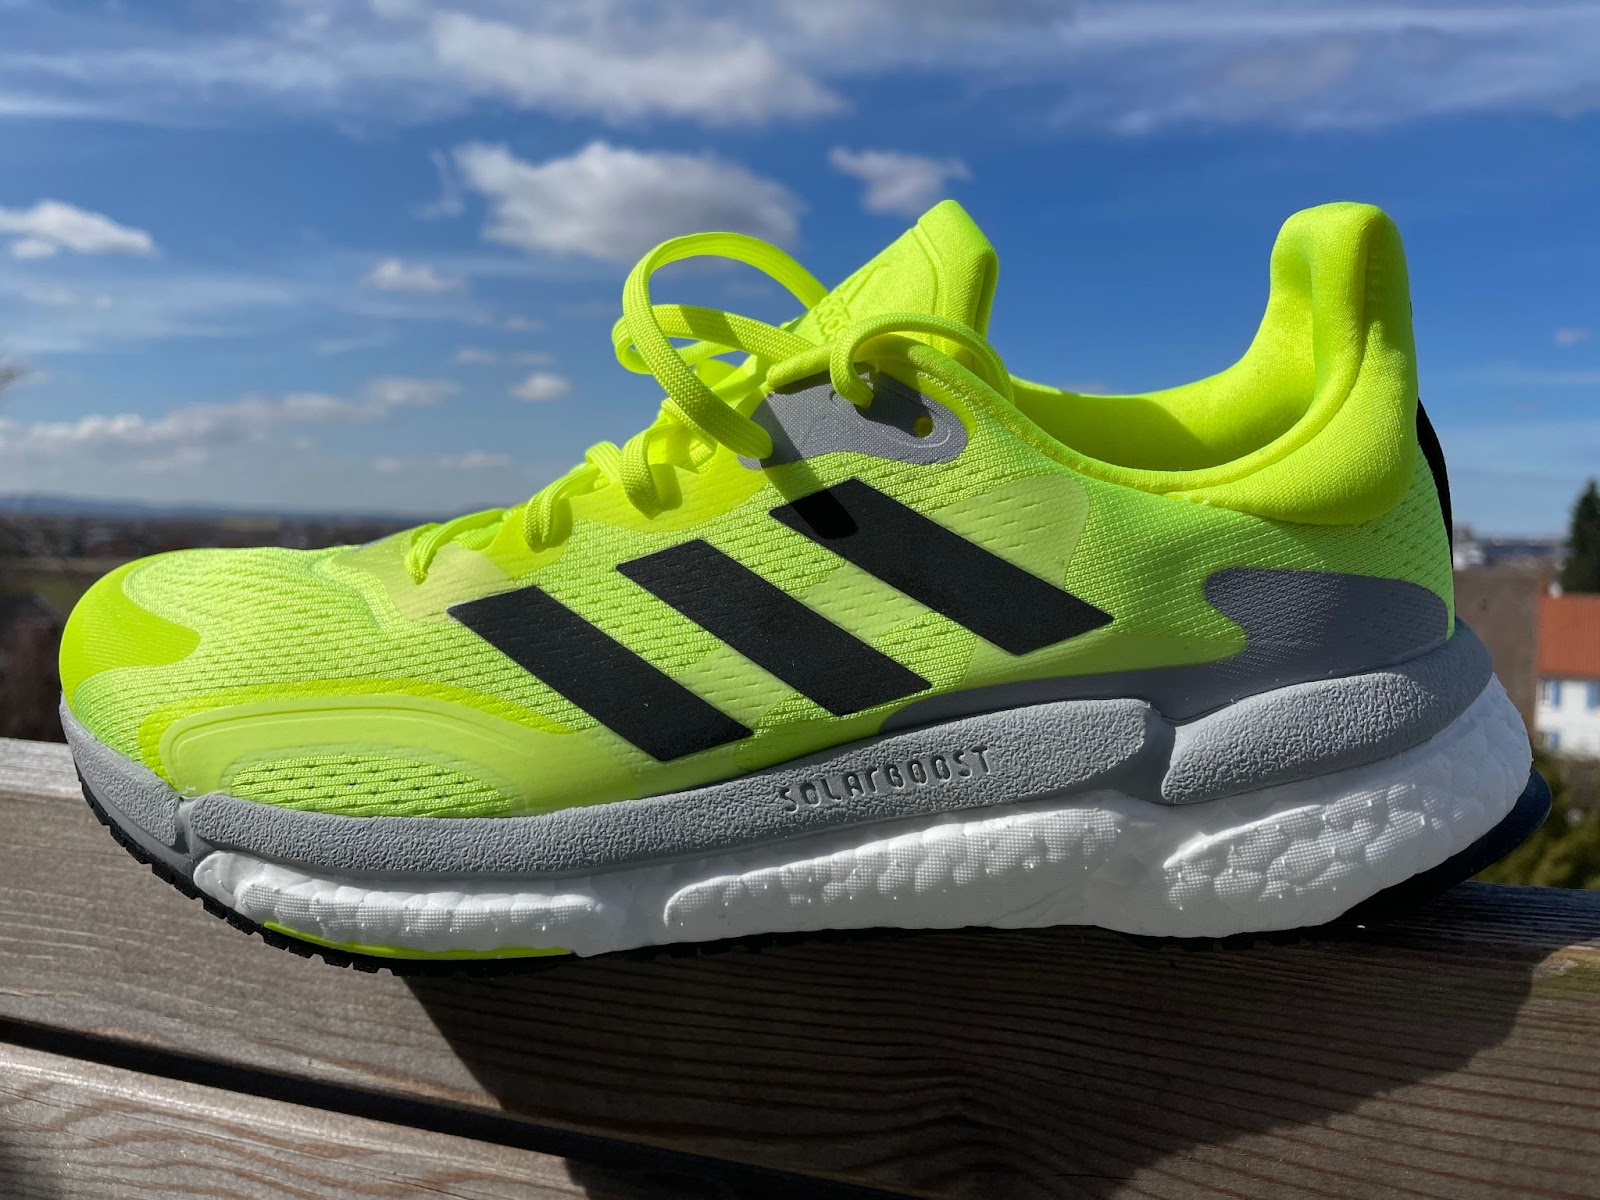 Road Trail Run: Testbericht: adidas Solarboost 3 - Ein stabiler Schuh!  (German)